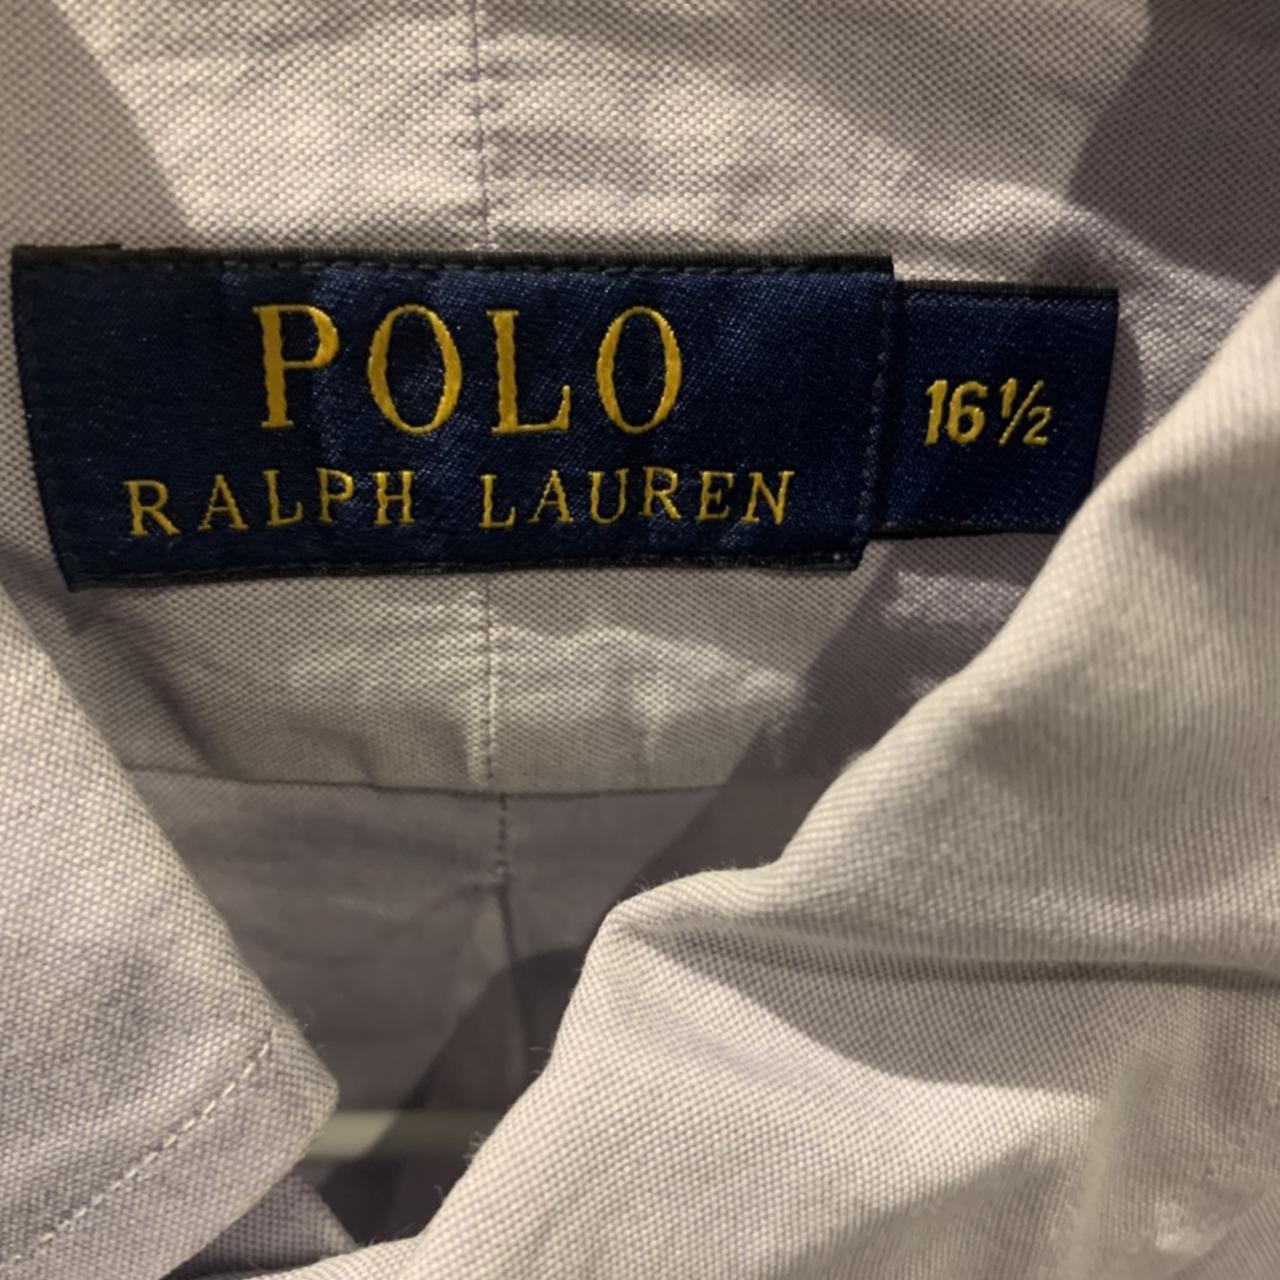 POLO RALPH LAUREN BUTTON DOWN SHIRT 16.5” collar L-XL - Depop